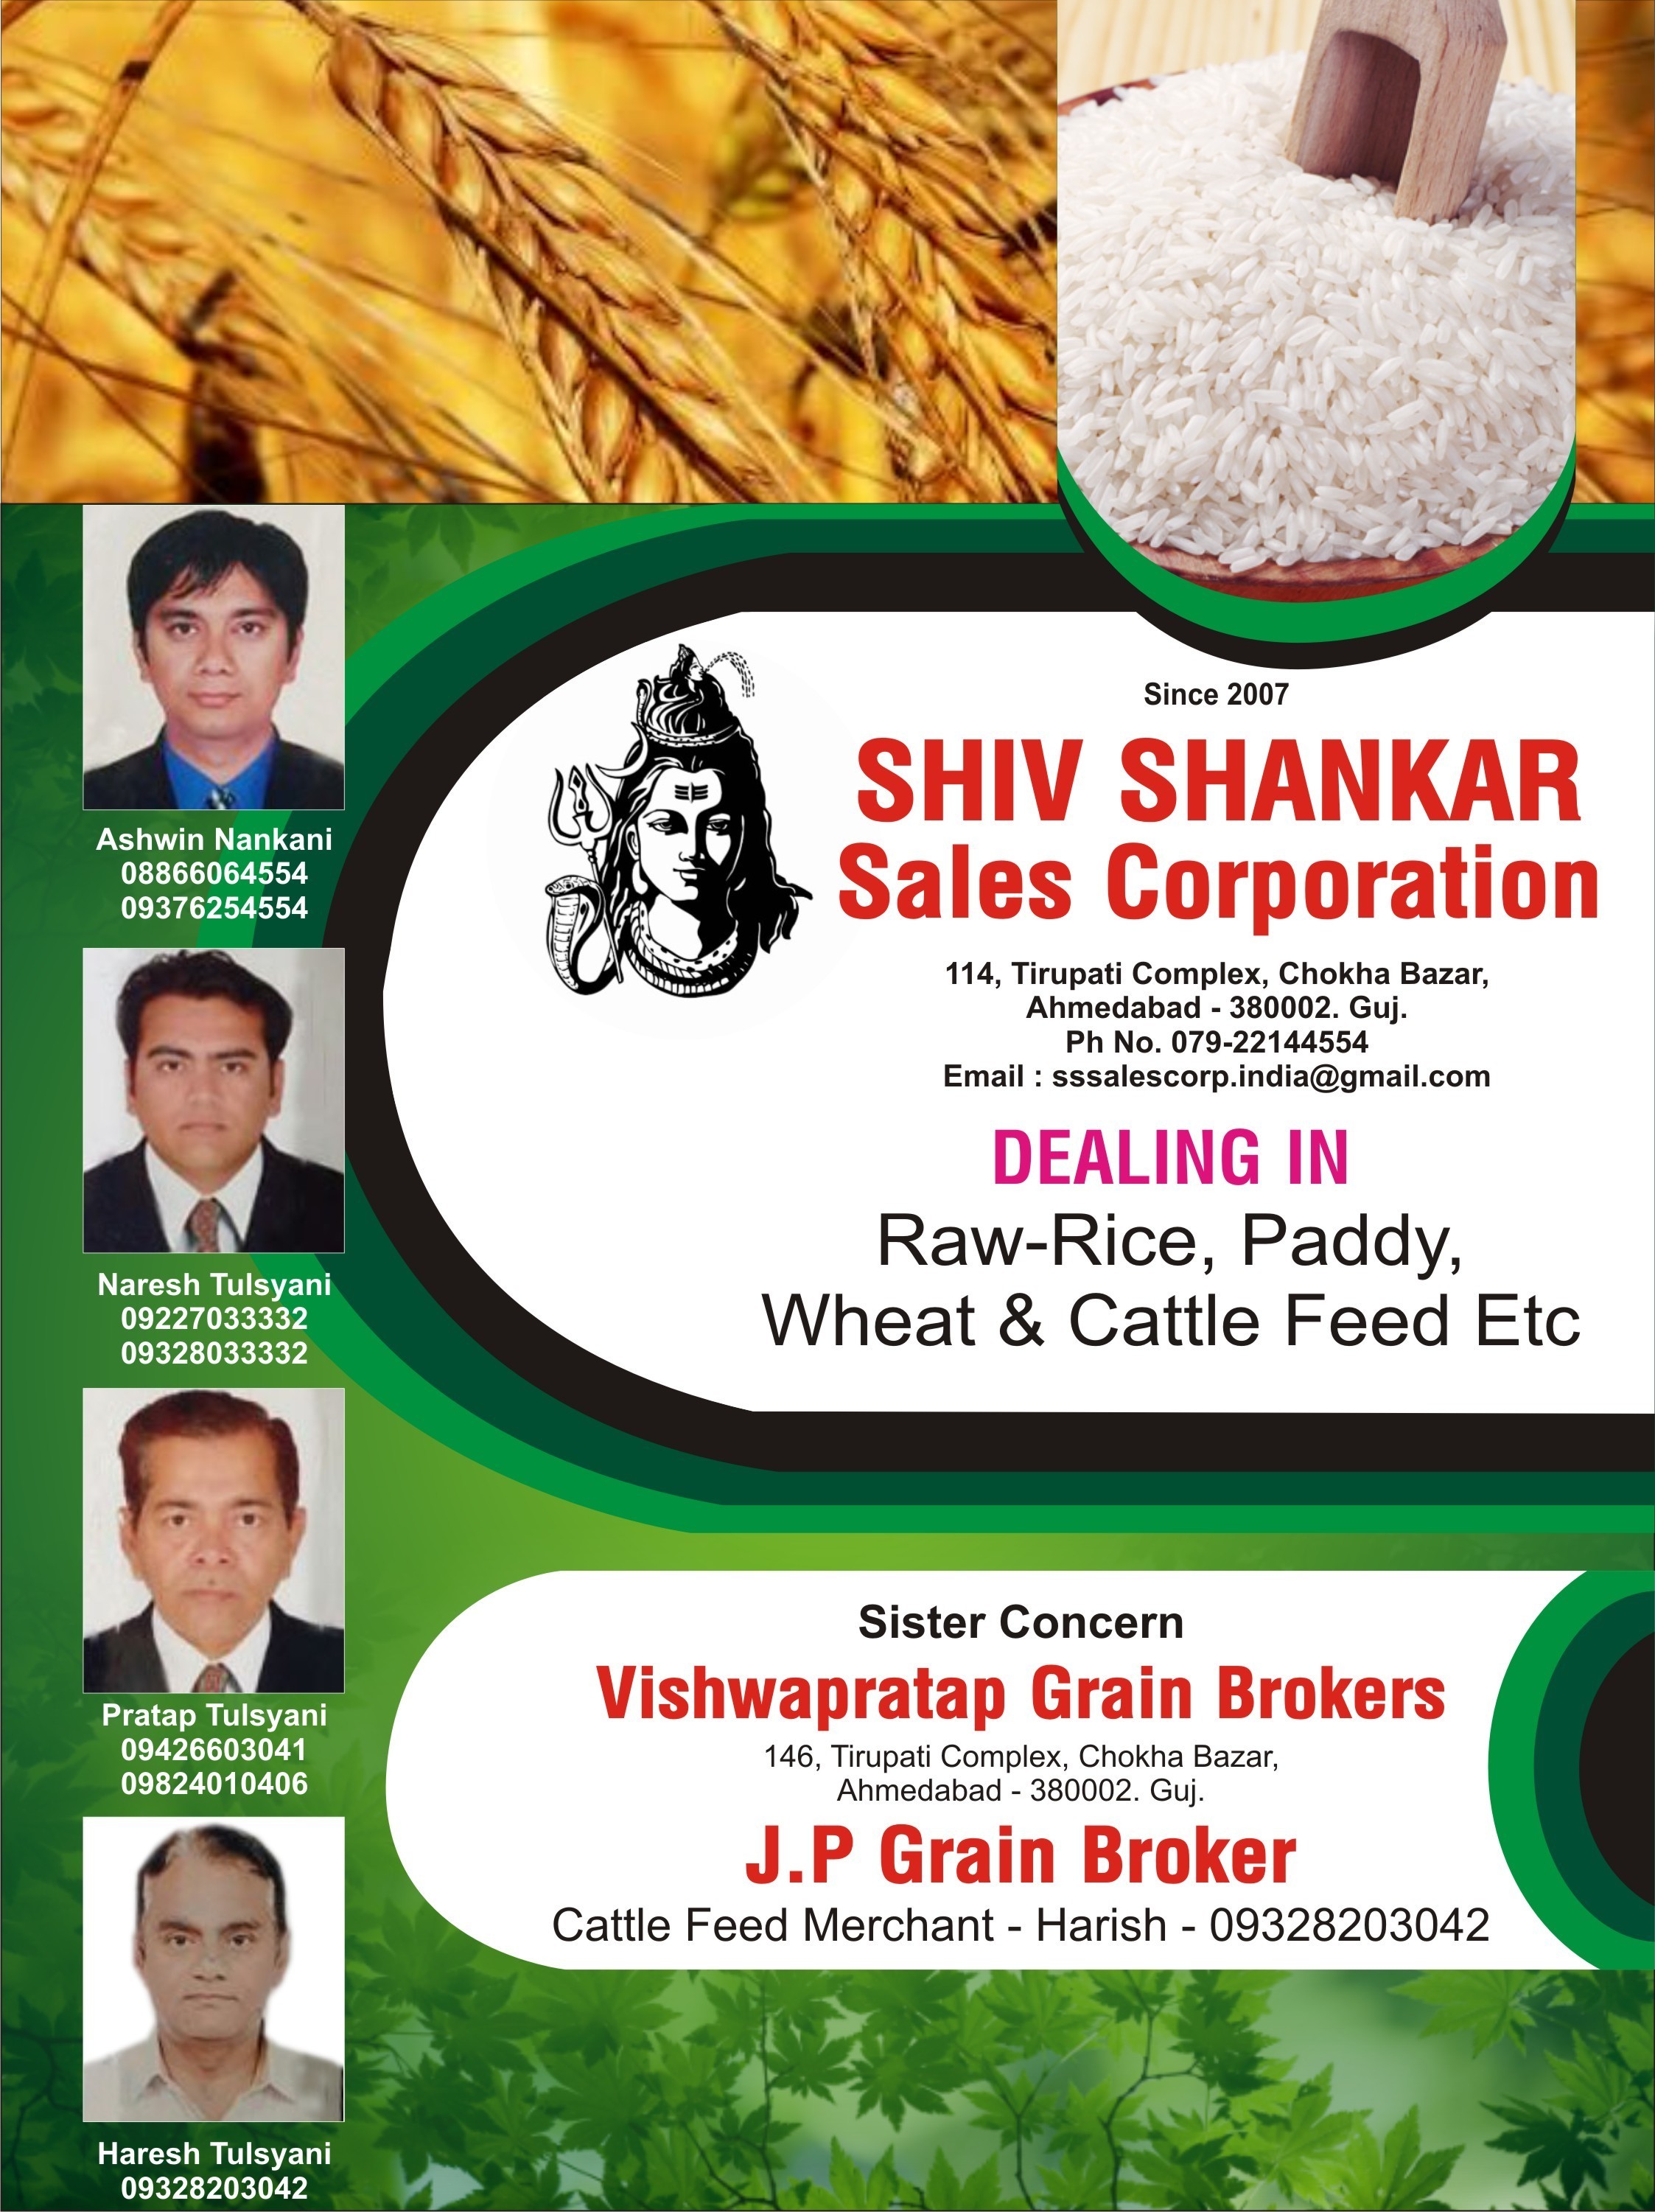 Shiv Shankar Sales Corporation